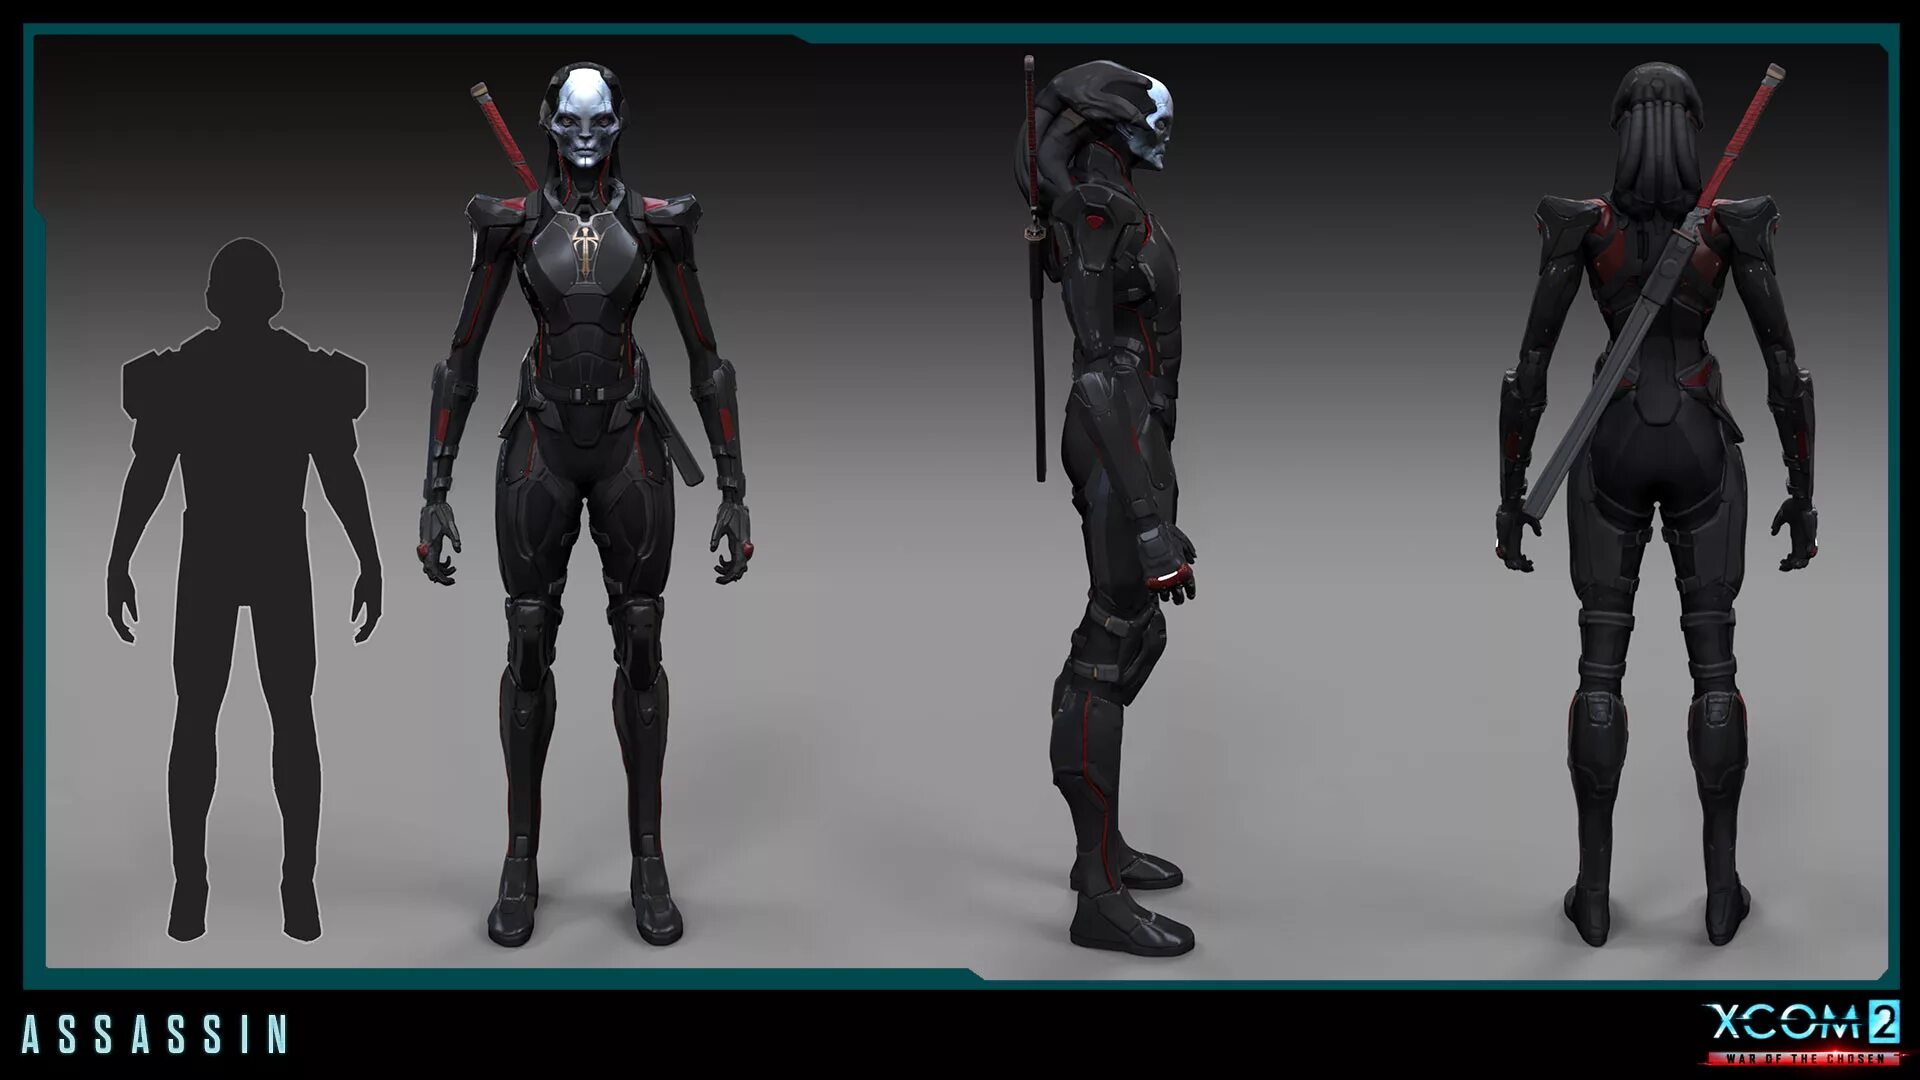 Избранный охотник XCOM 2 избранный. ХСОМ 2 концепт арт. XCOM 2 Assassin Art.